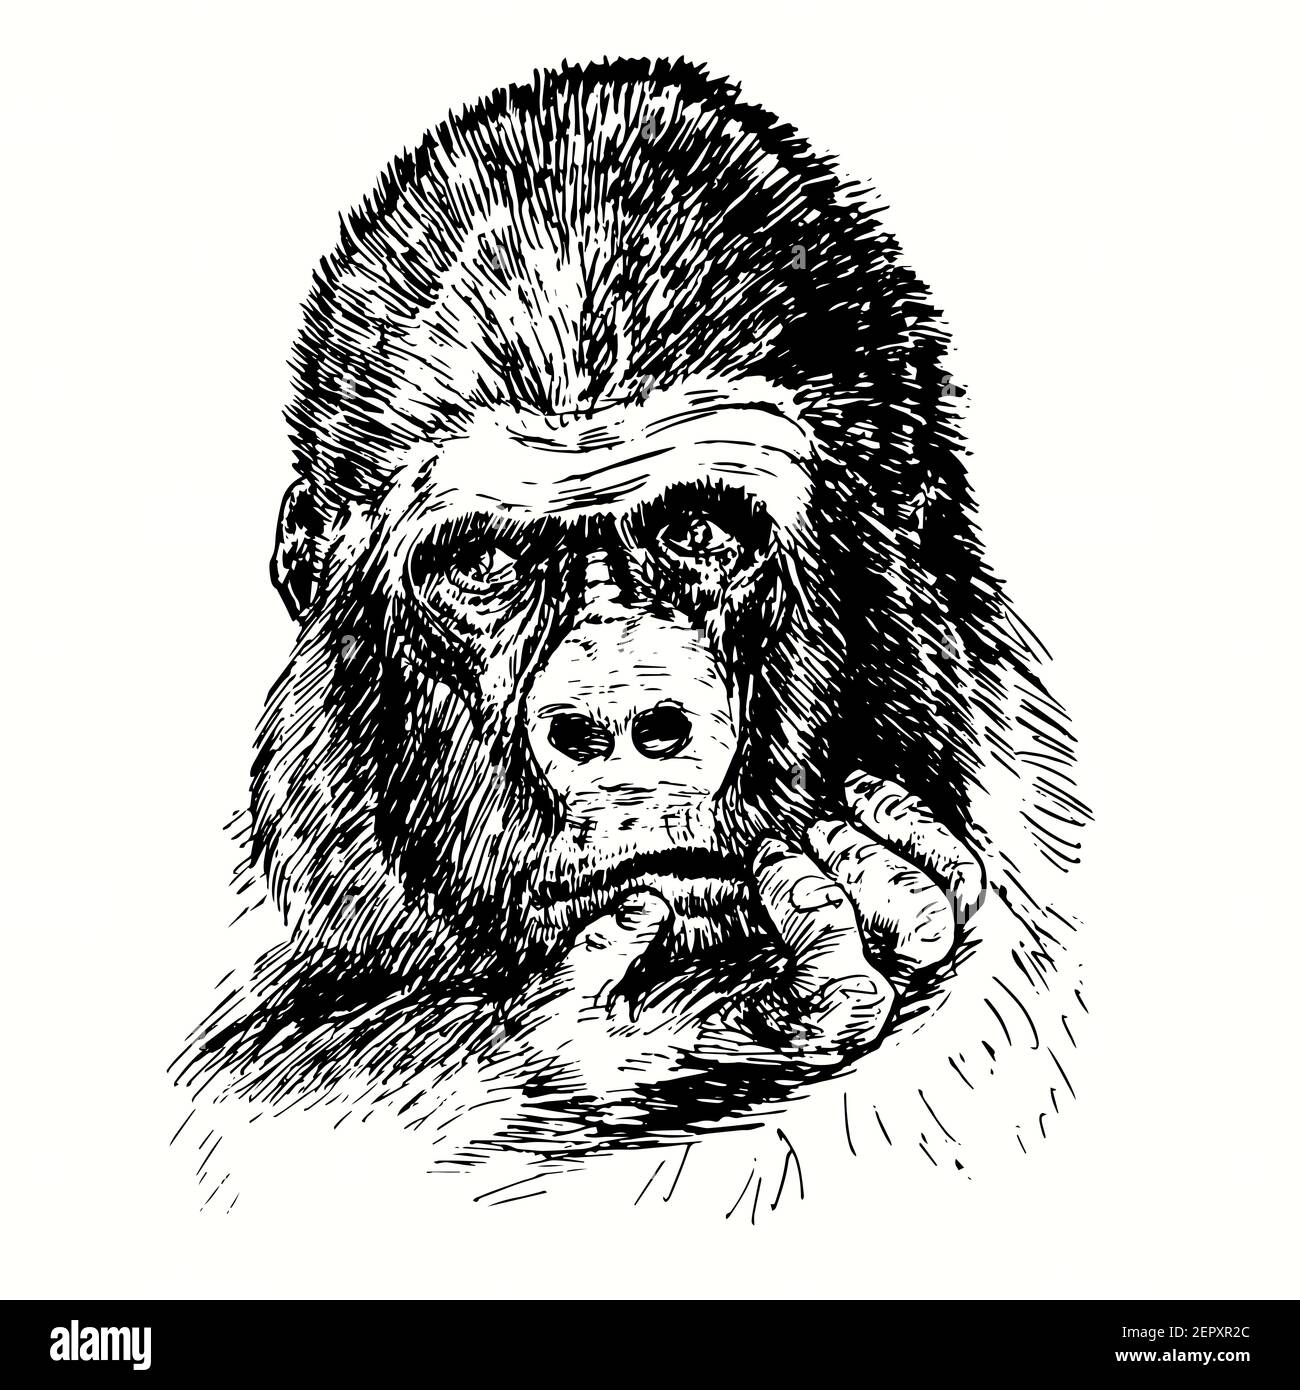 Handgezogener Gorilla mit ernsthaftem Gesicht, das die Hand am Kinn hält. Tinte schwarz-weiß Zeichnung Stockfoto